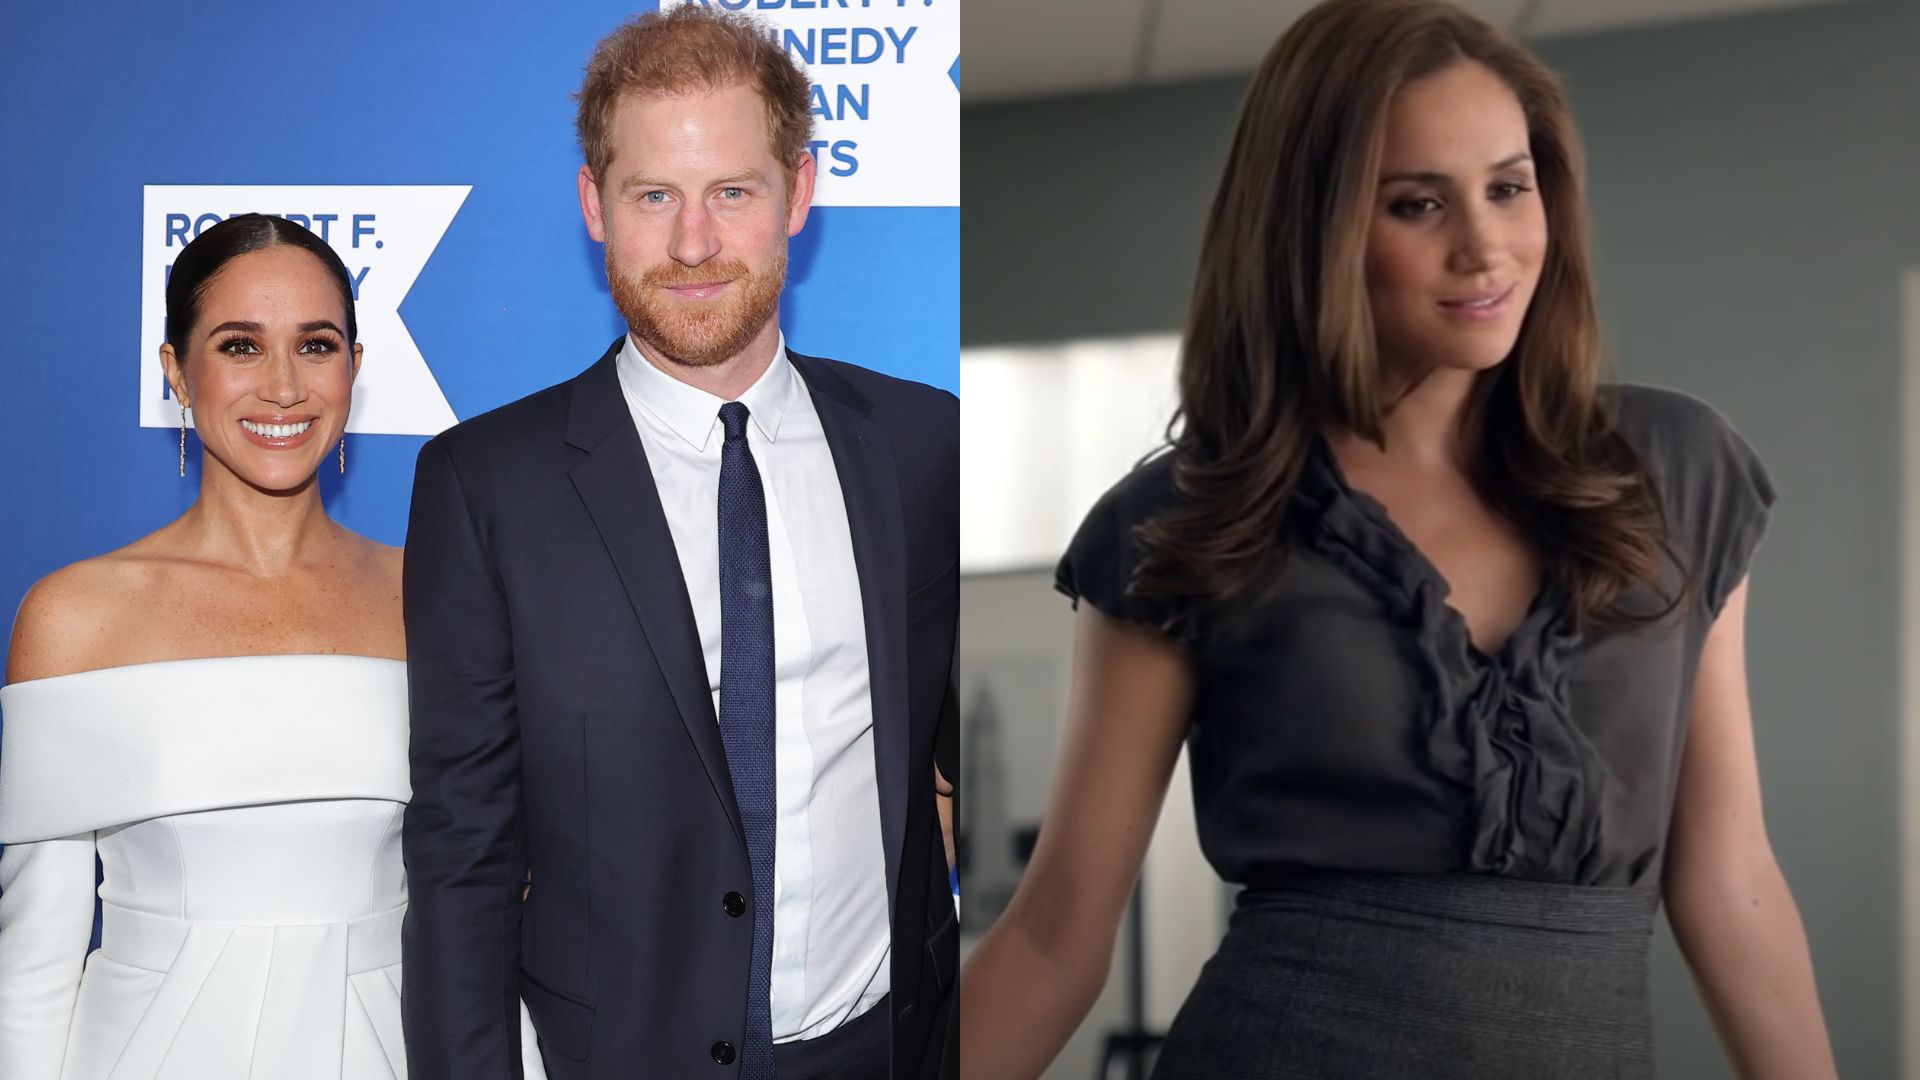 Príncipe Harry admite “erro” em assistir a cena de sexo de Meghan Markle em “Suits”, e revela que William era fã da atriz